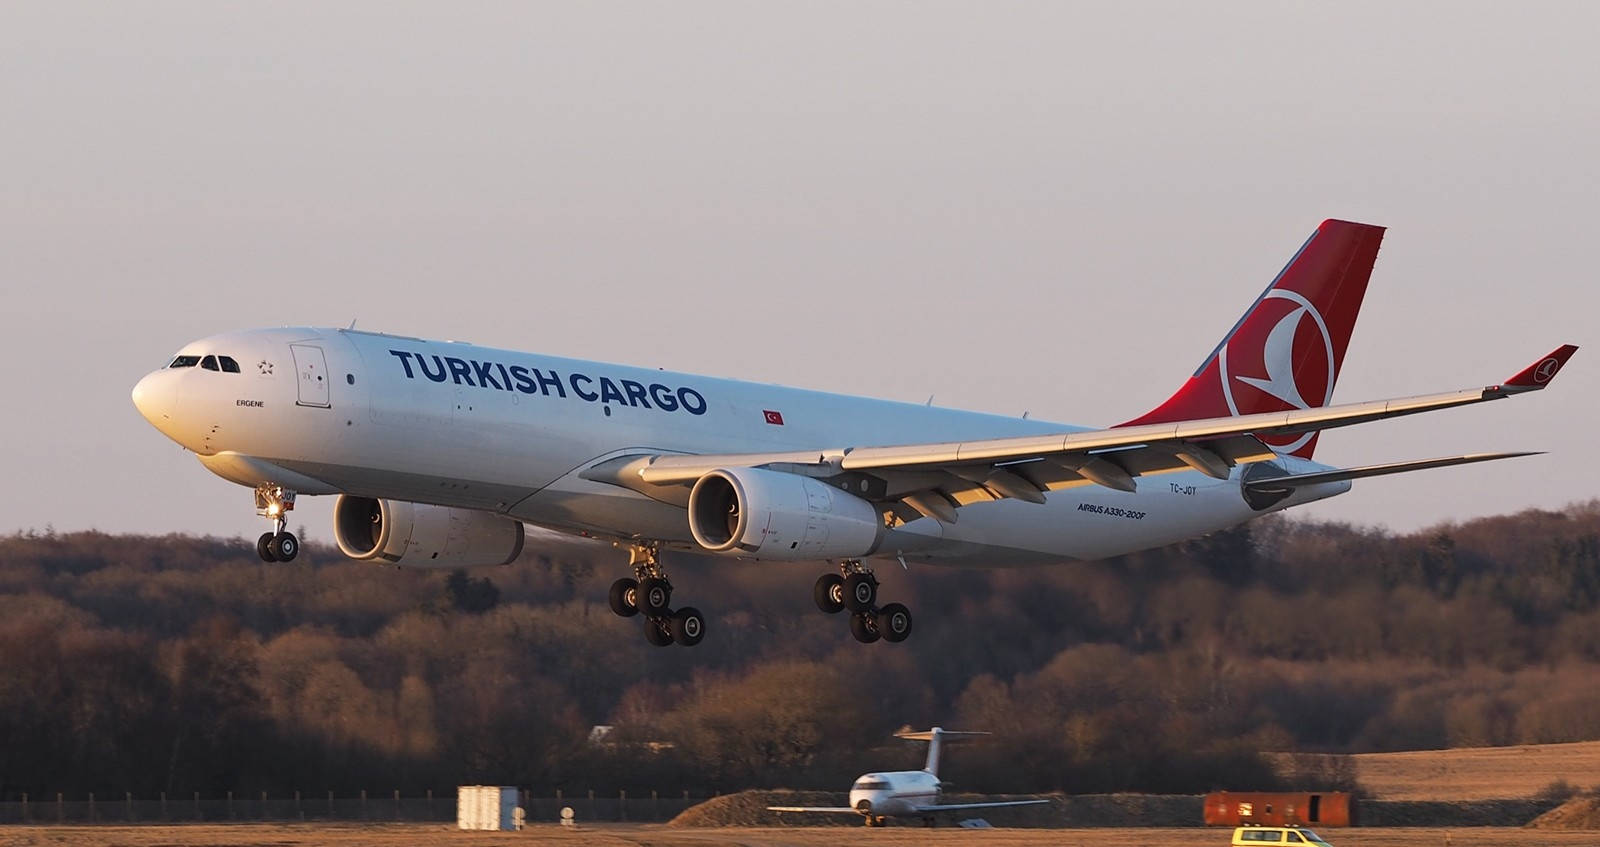 Turkish Airlines Turkish Cargo Airplane Wallpaper